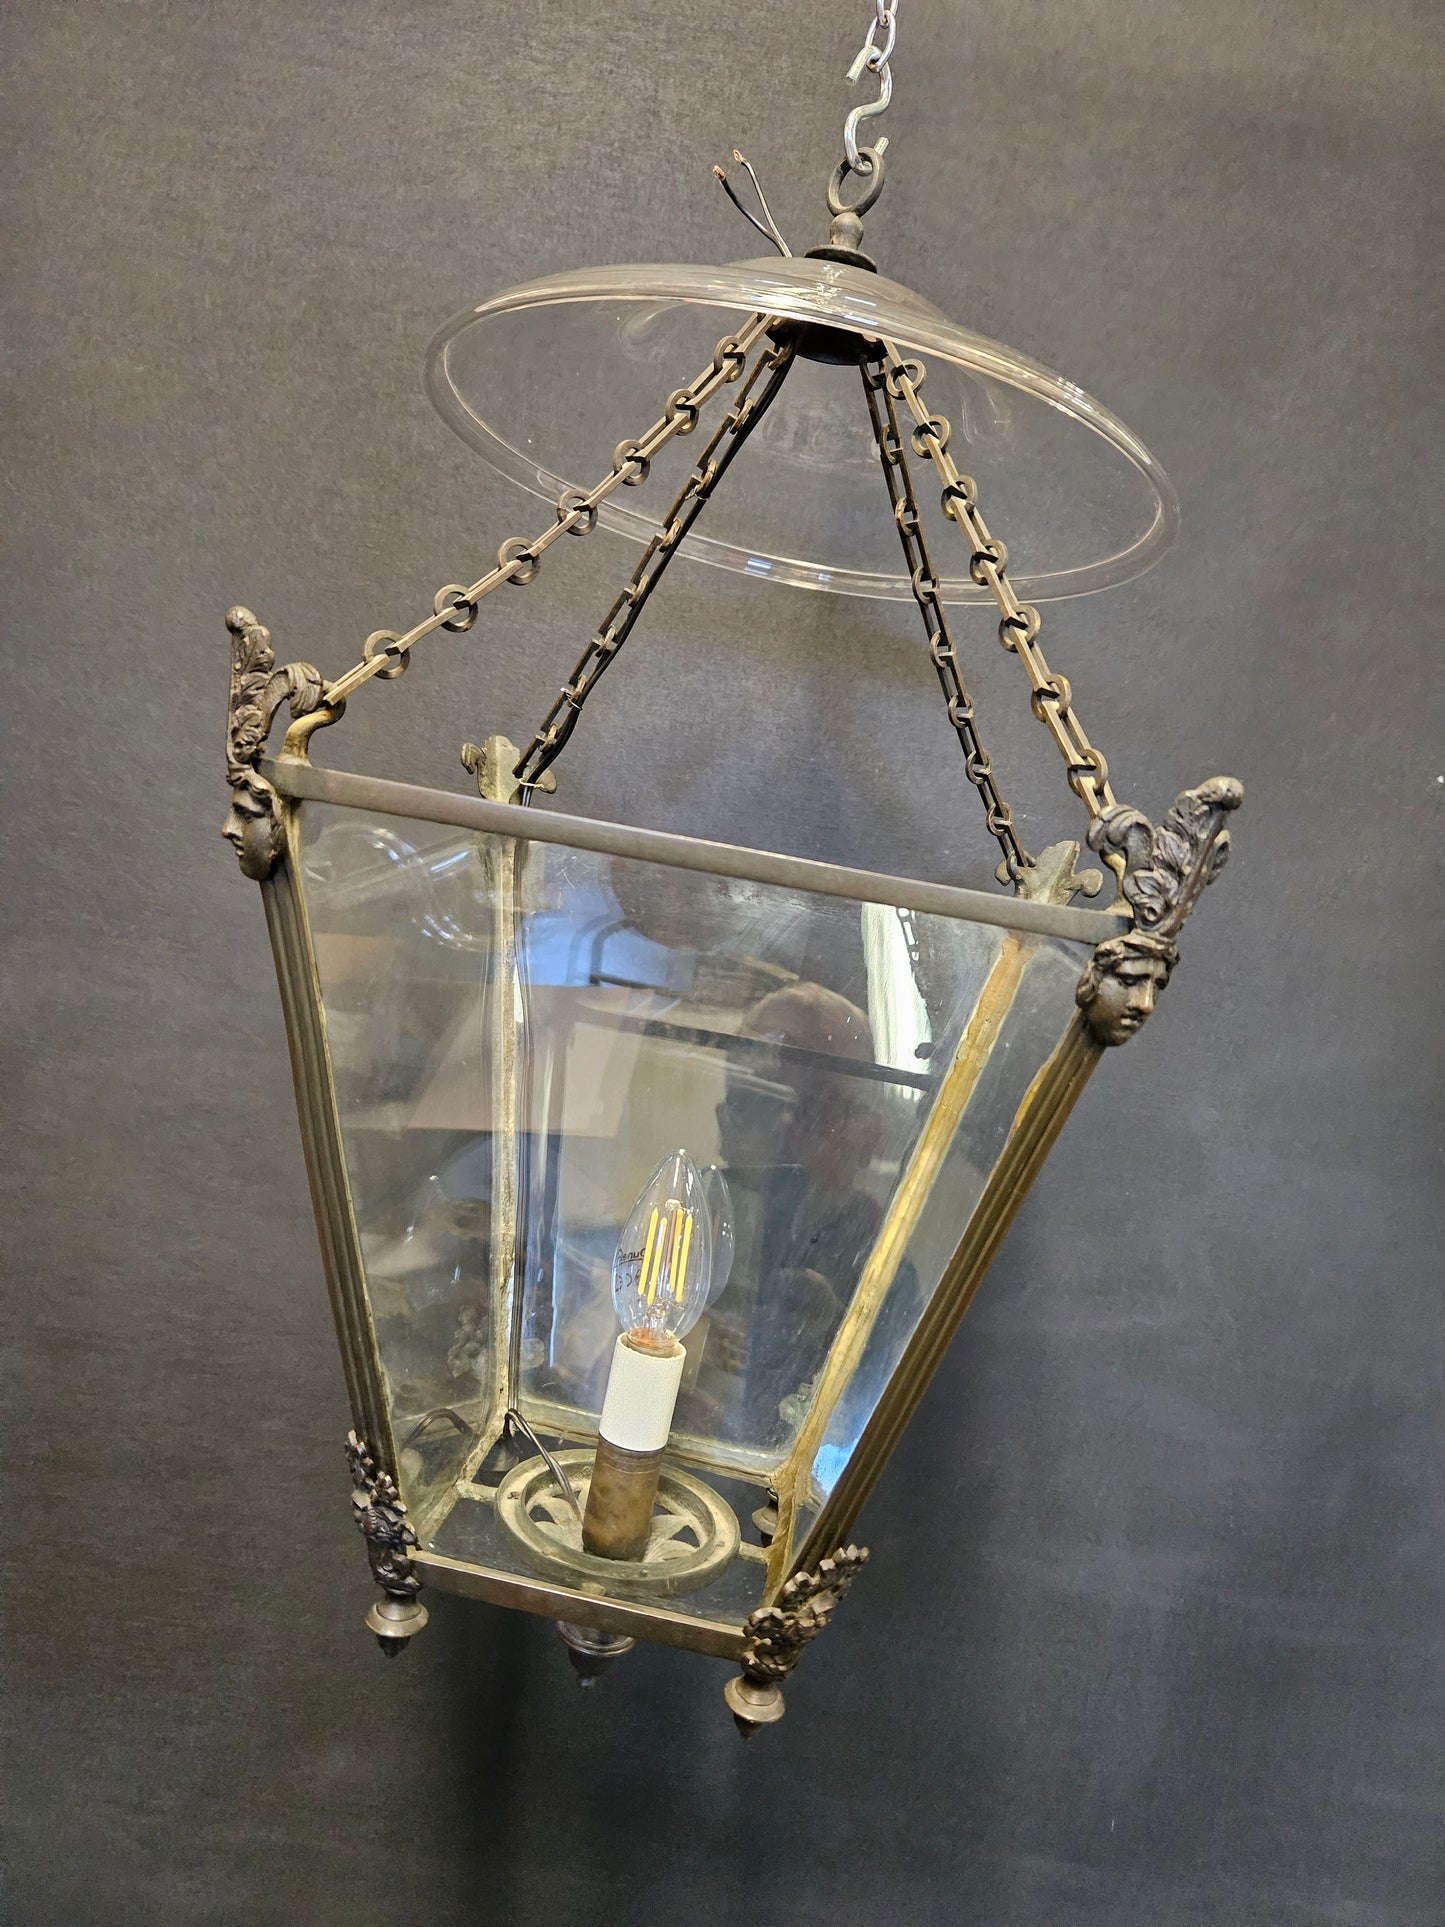 4-Sided Regency Lantern